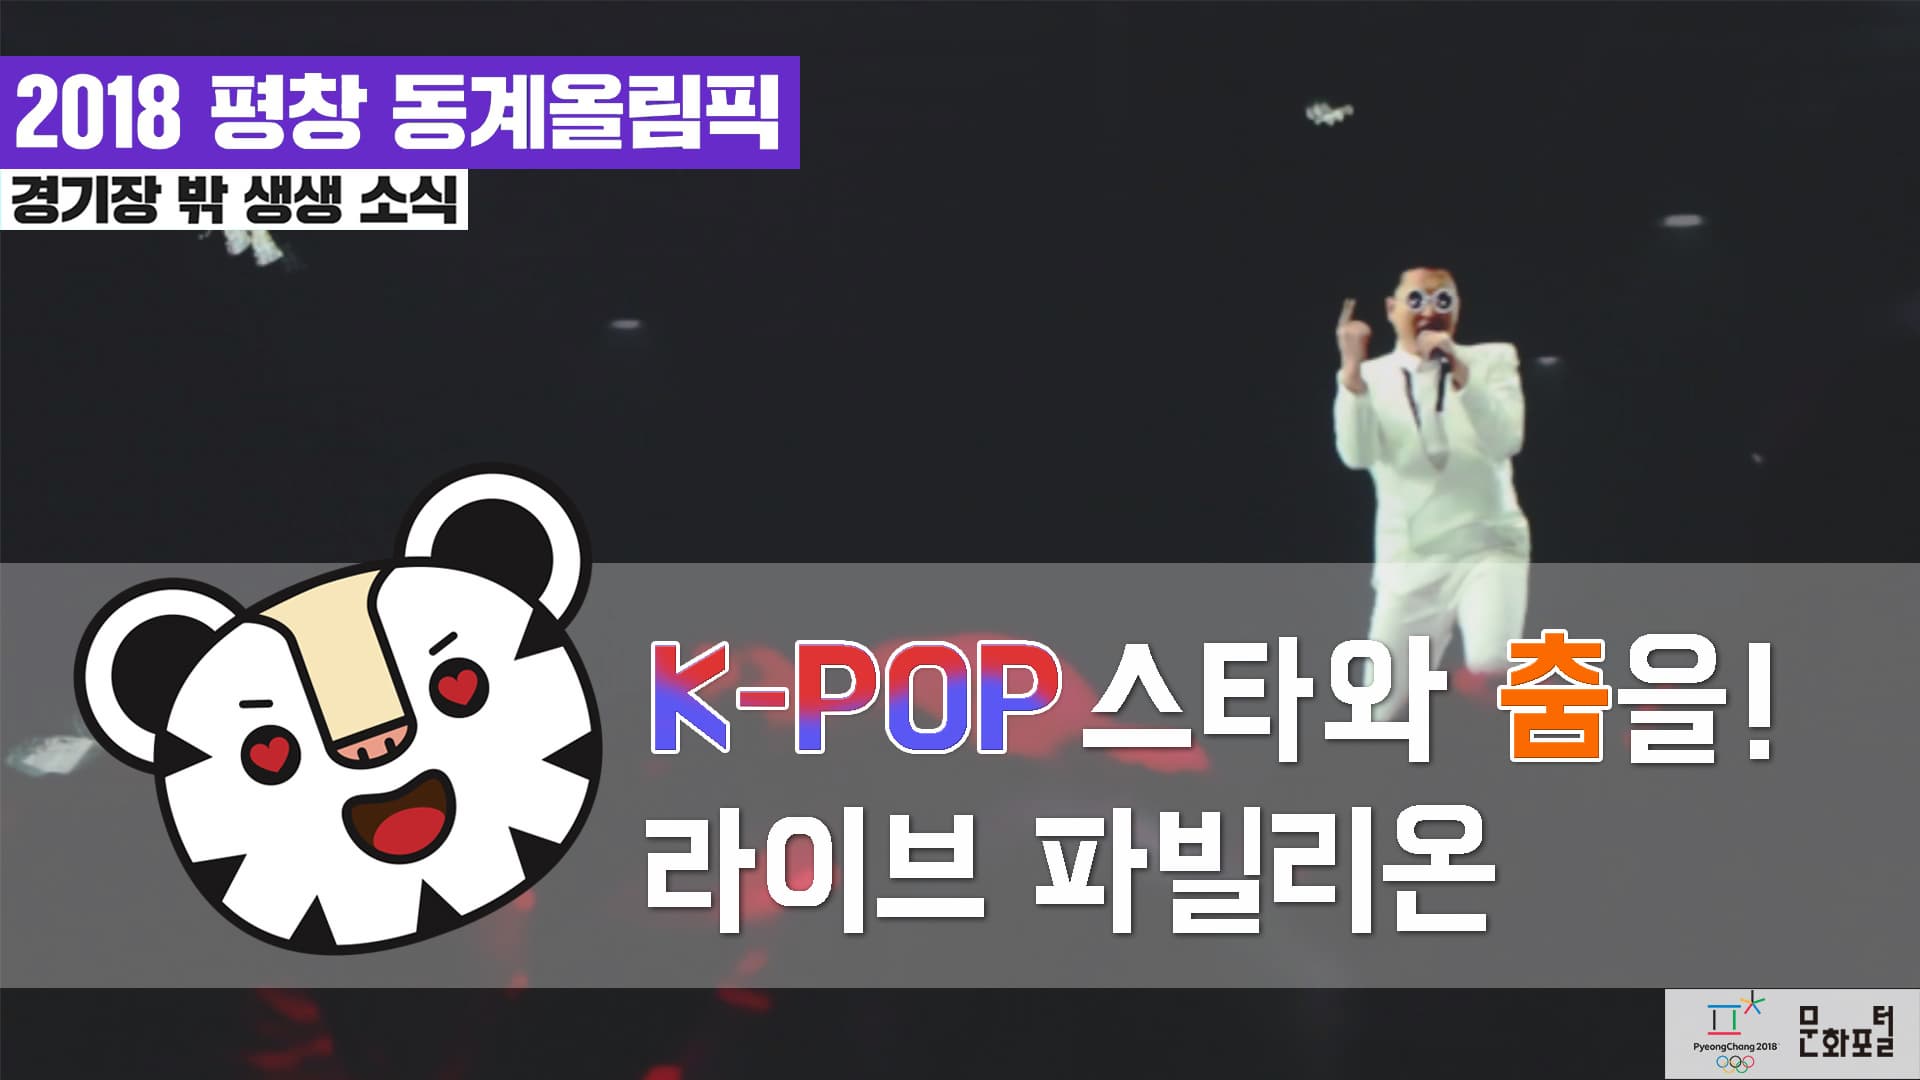 [2018 평창] K-POP 스타와 춤을! 라이브 파빌리온